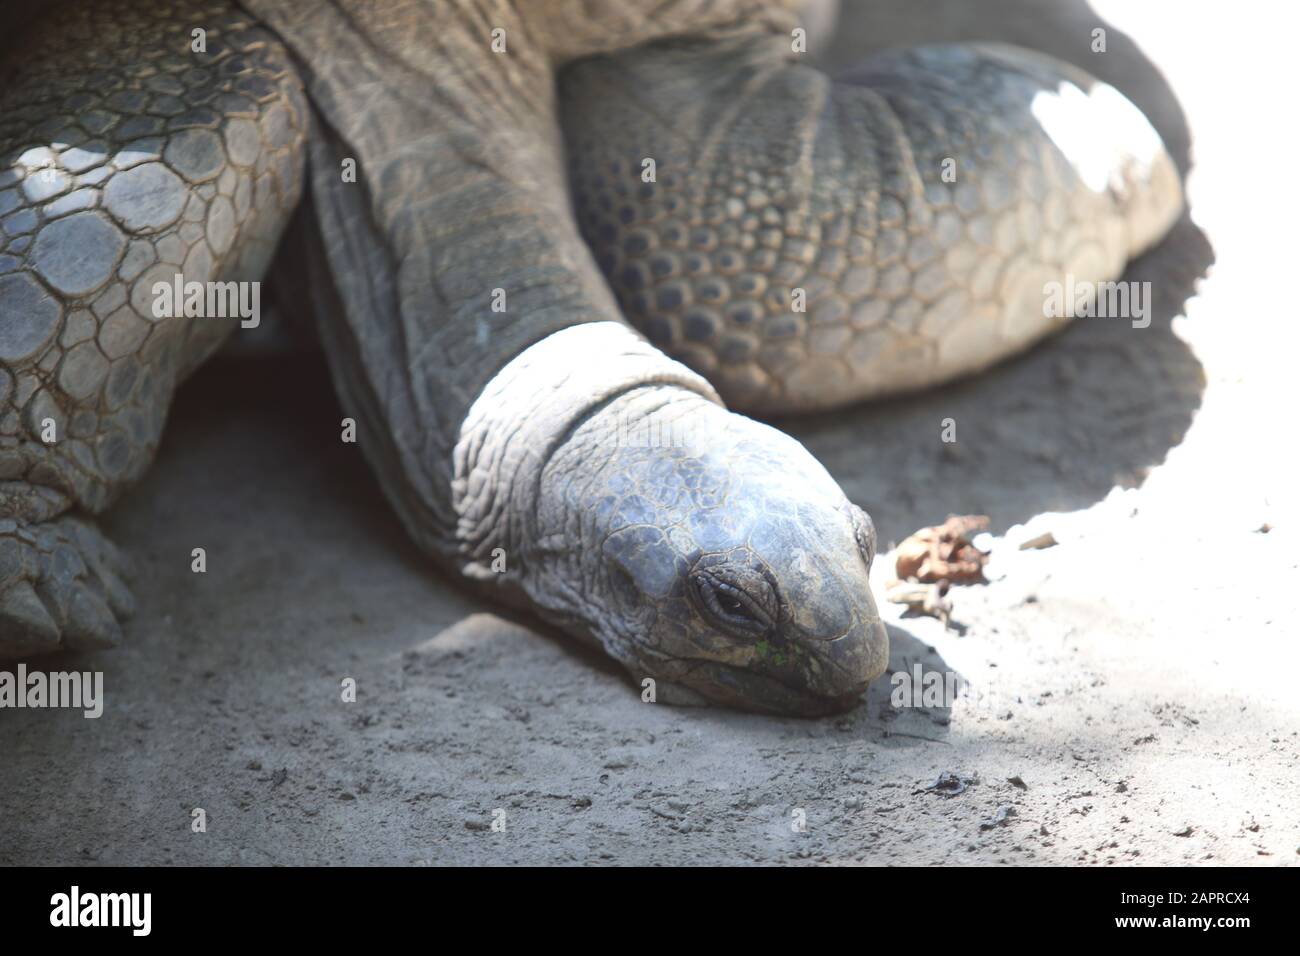 Tortue géante Aldabra (Aldabrachelys gigantea) Banque D'Images